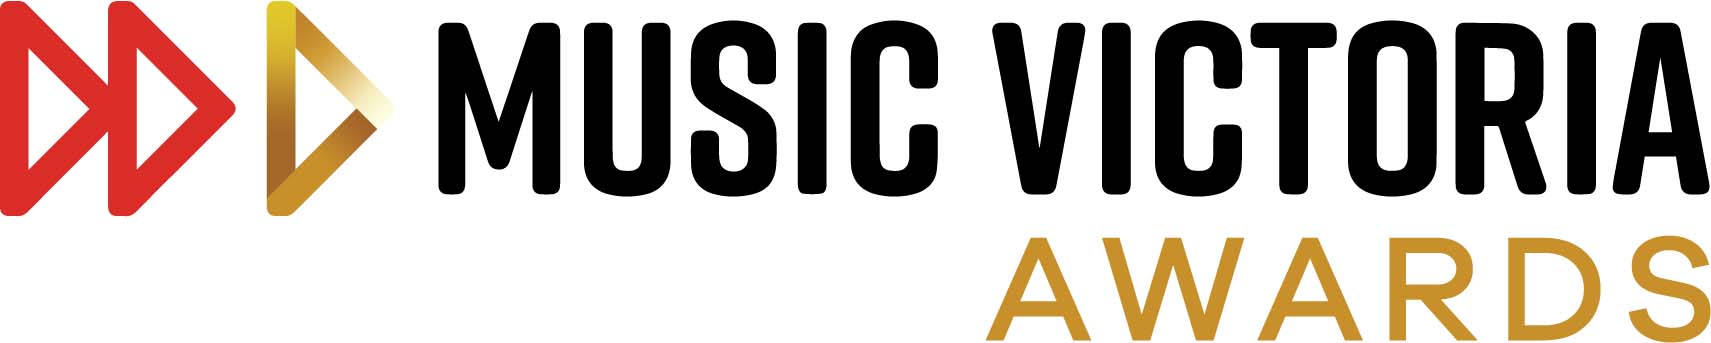 Music Victoria logo in colour